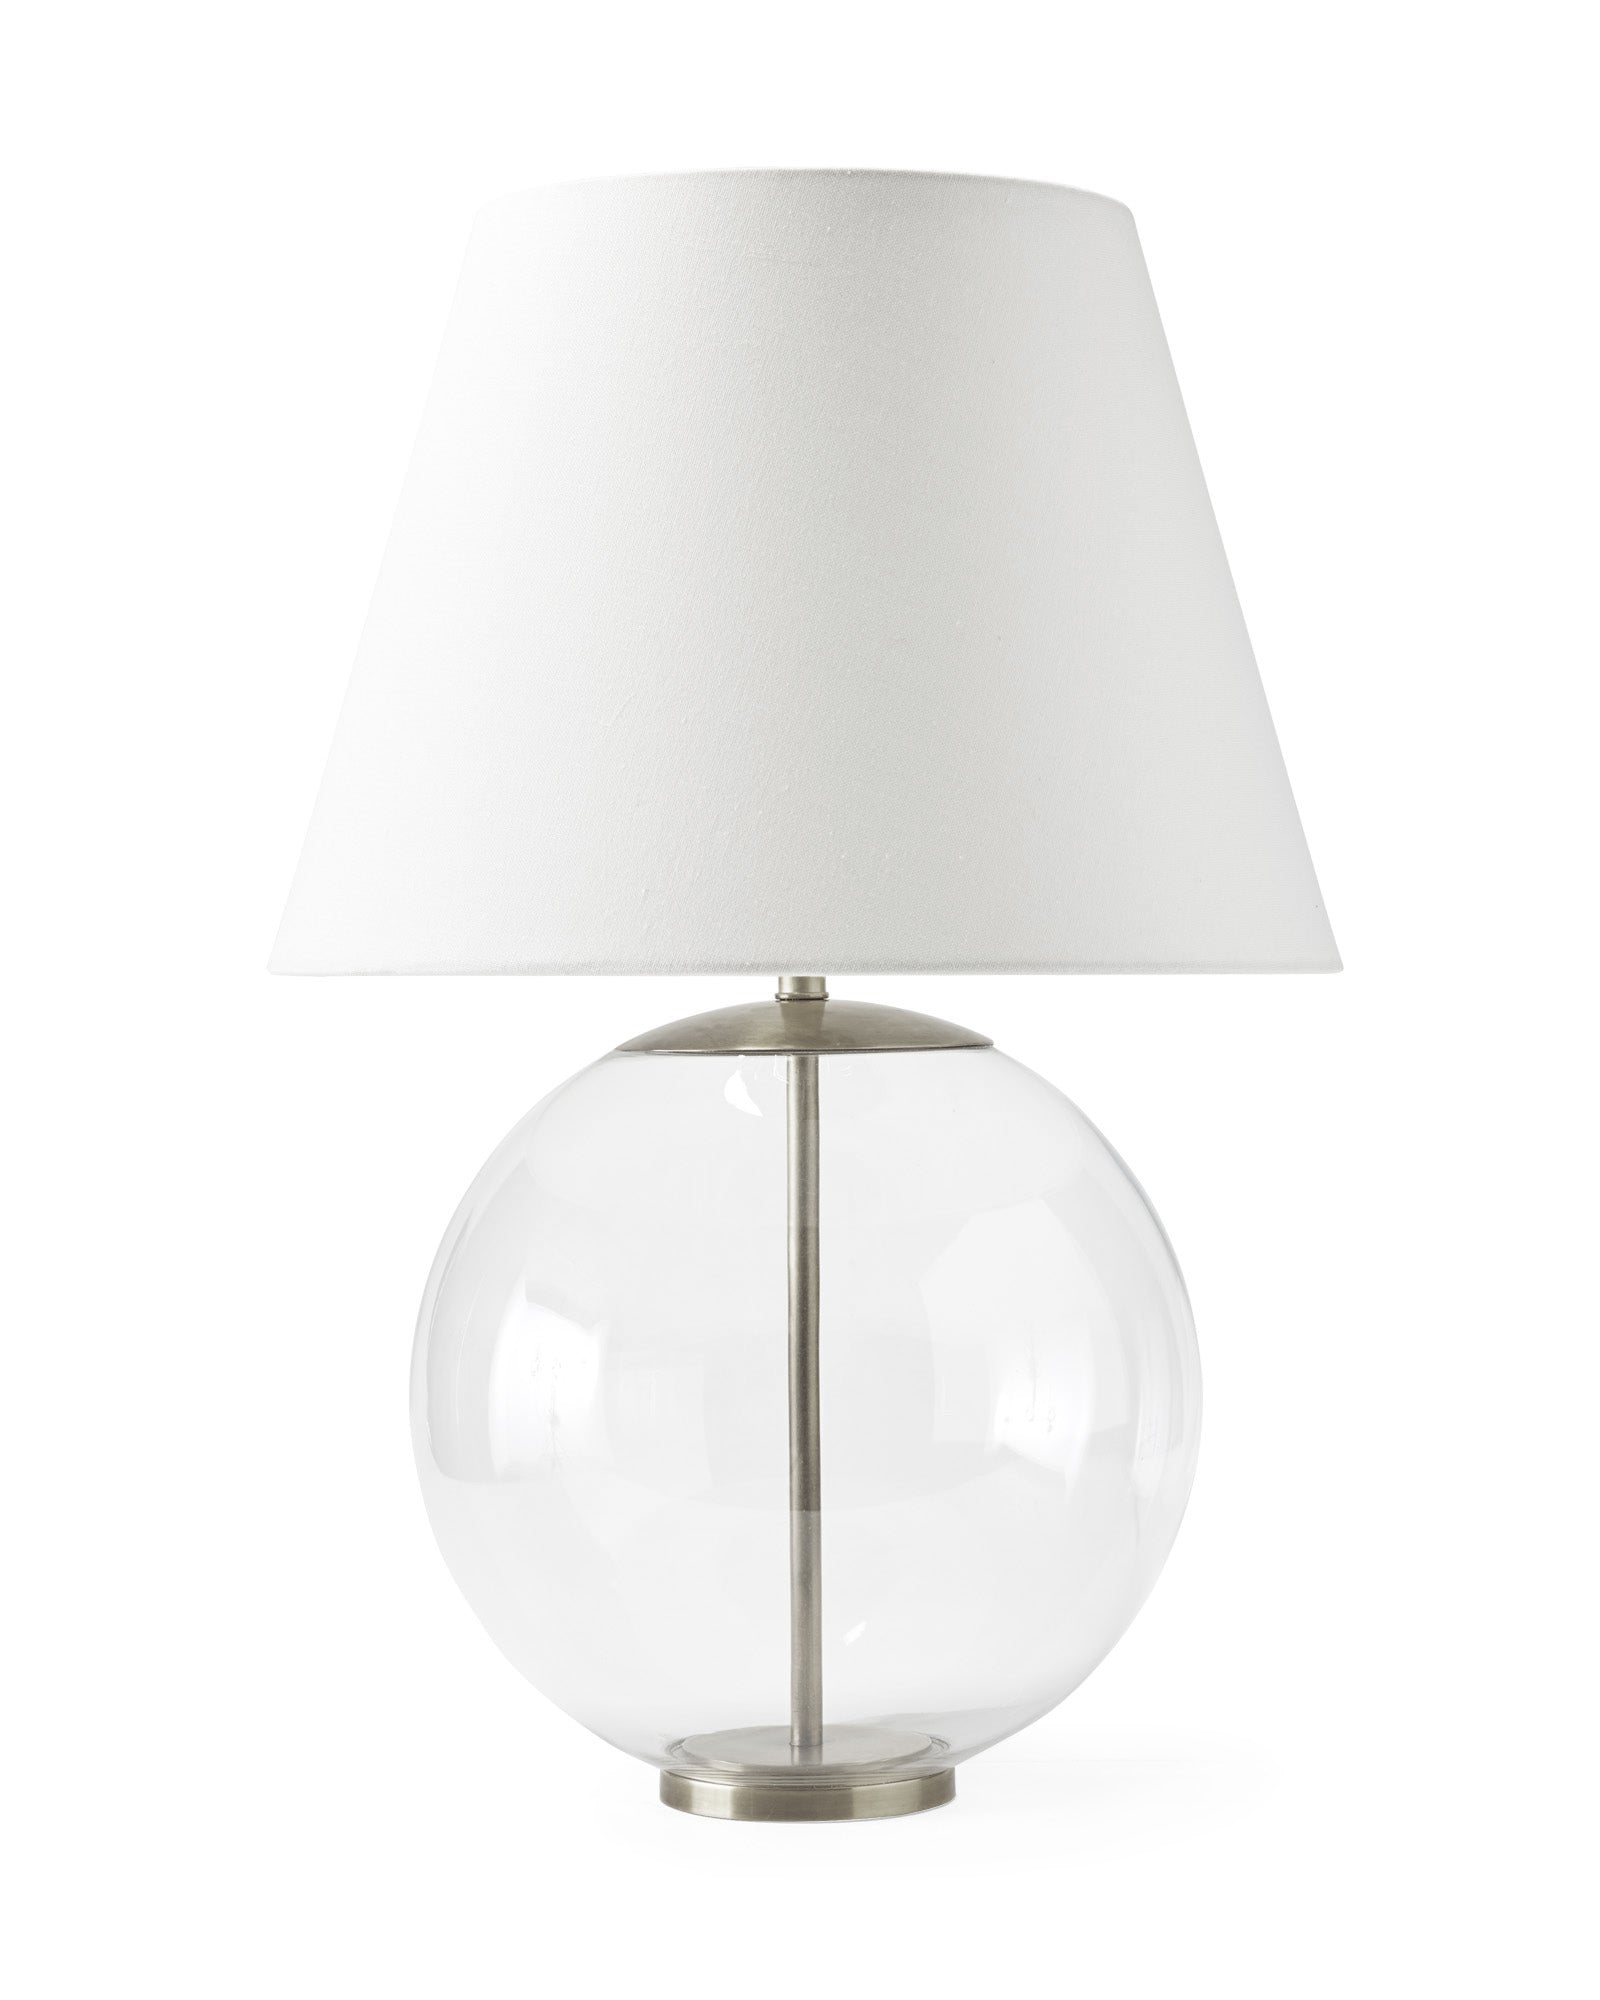 Серебряная настольная лампа "Клейтон" в форме стеклянного шара на стальной подставке.